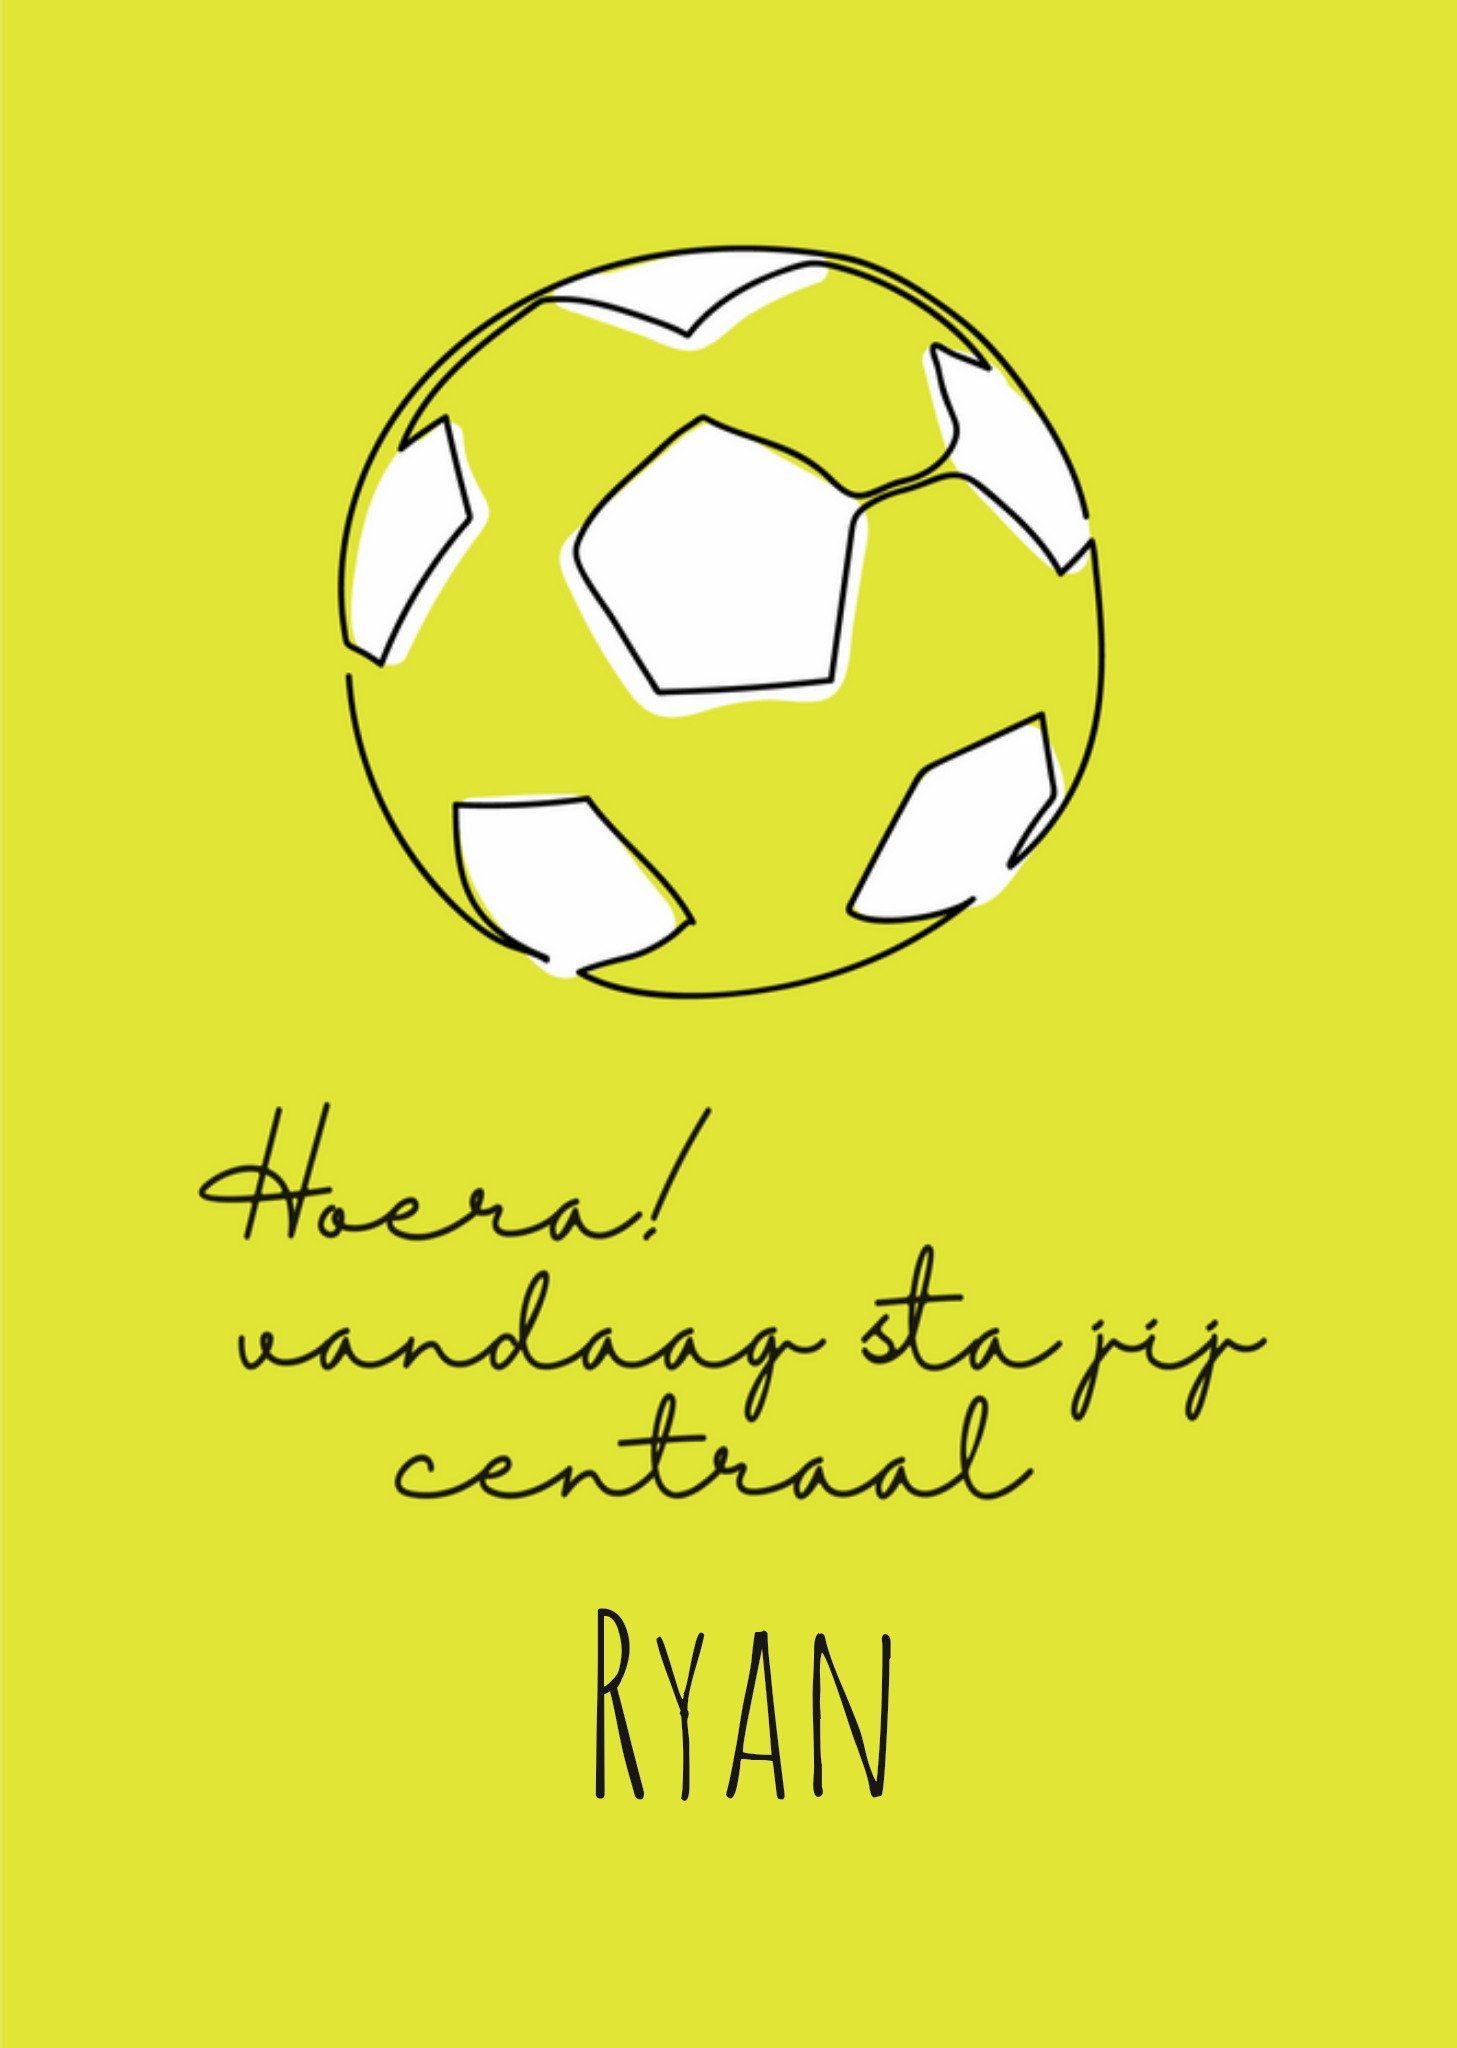 Paperclip - Verjaardagskaart - voetbal